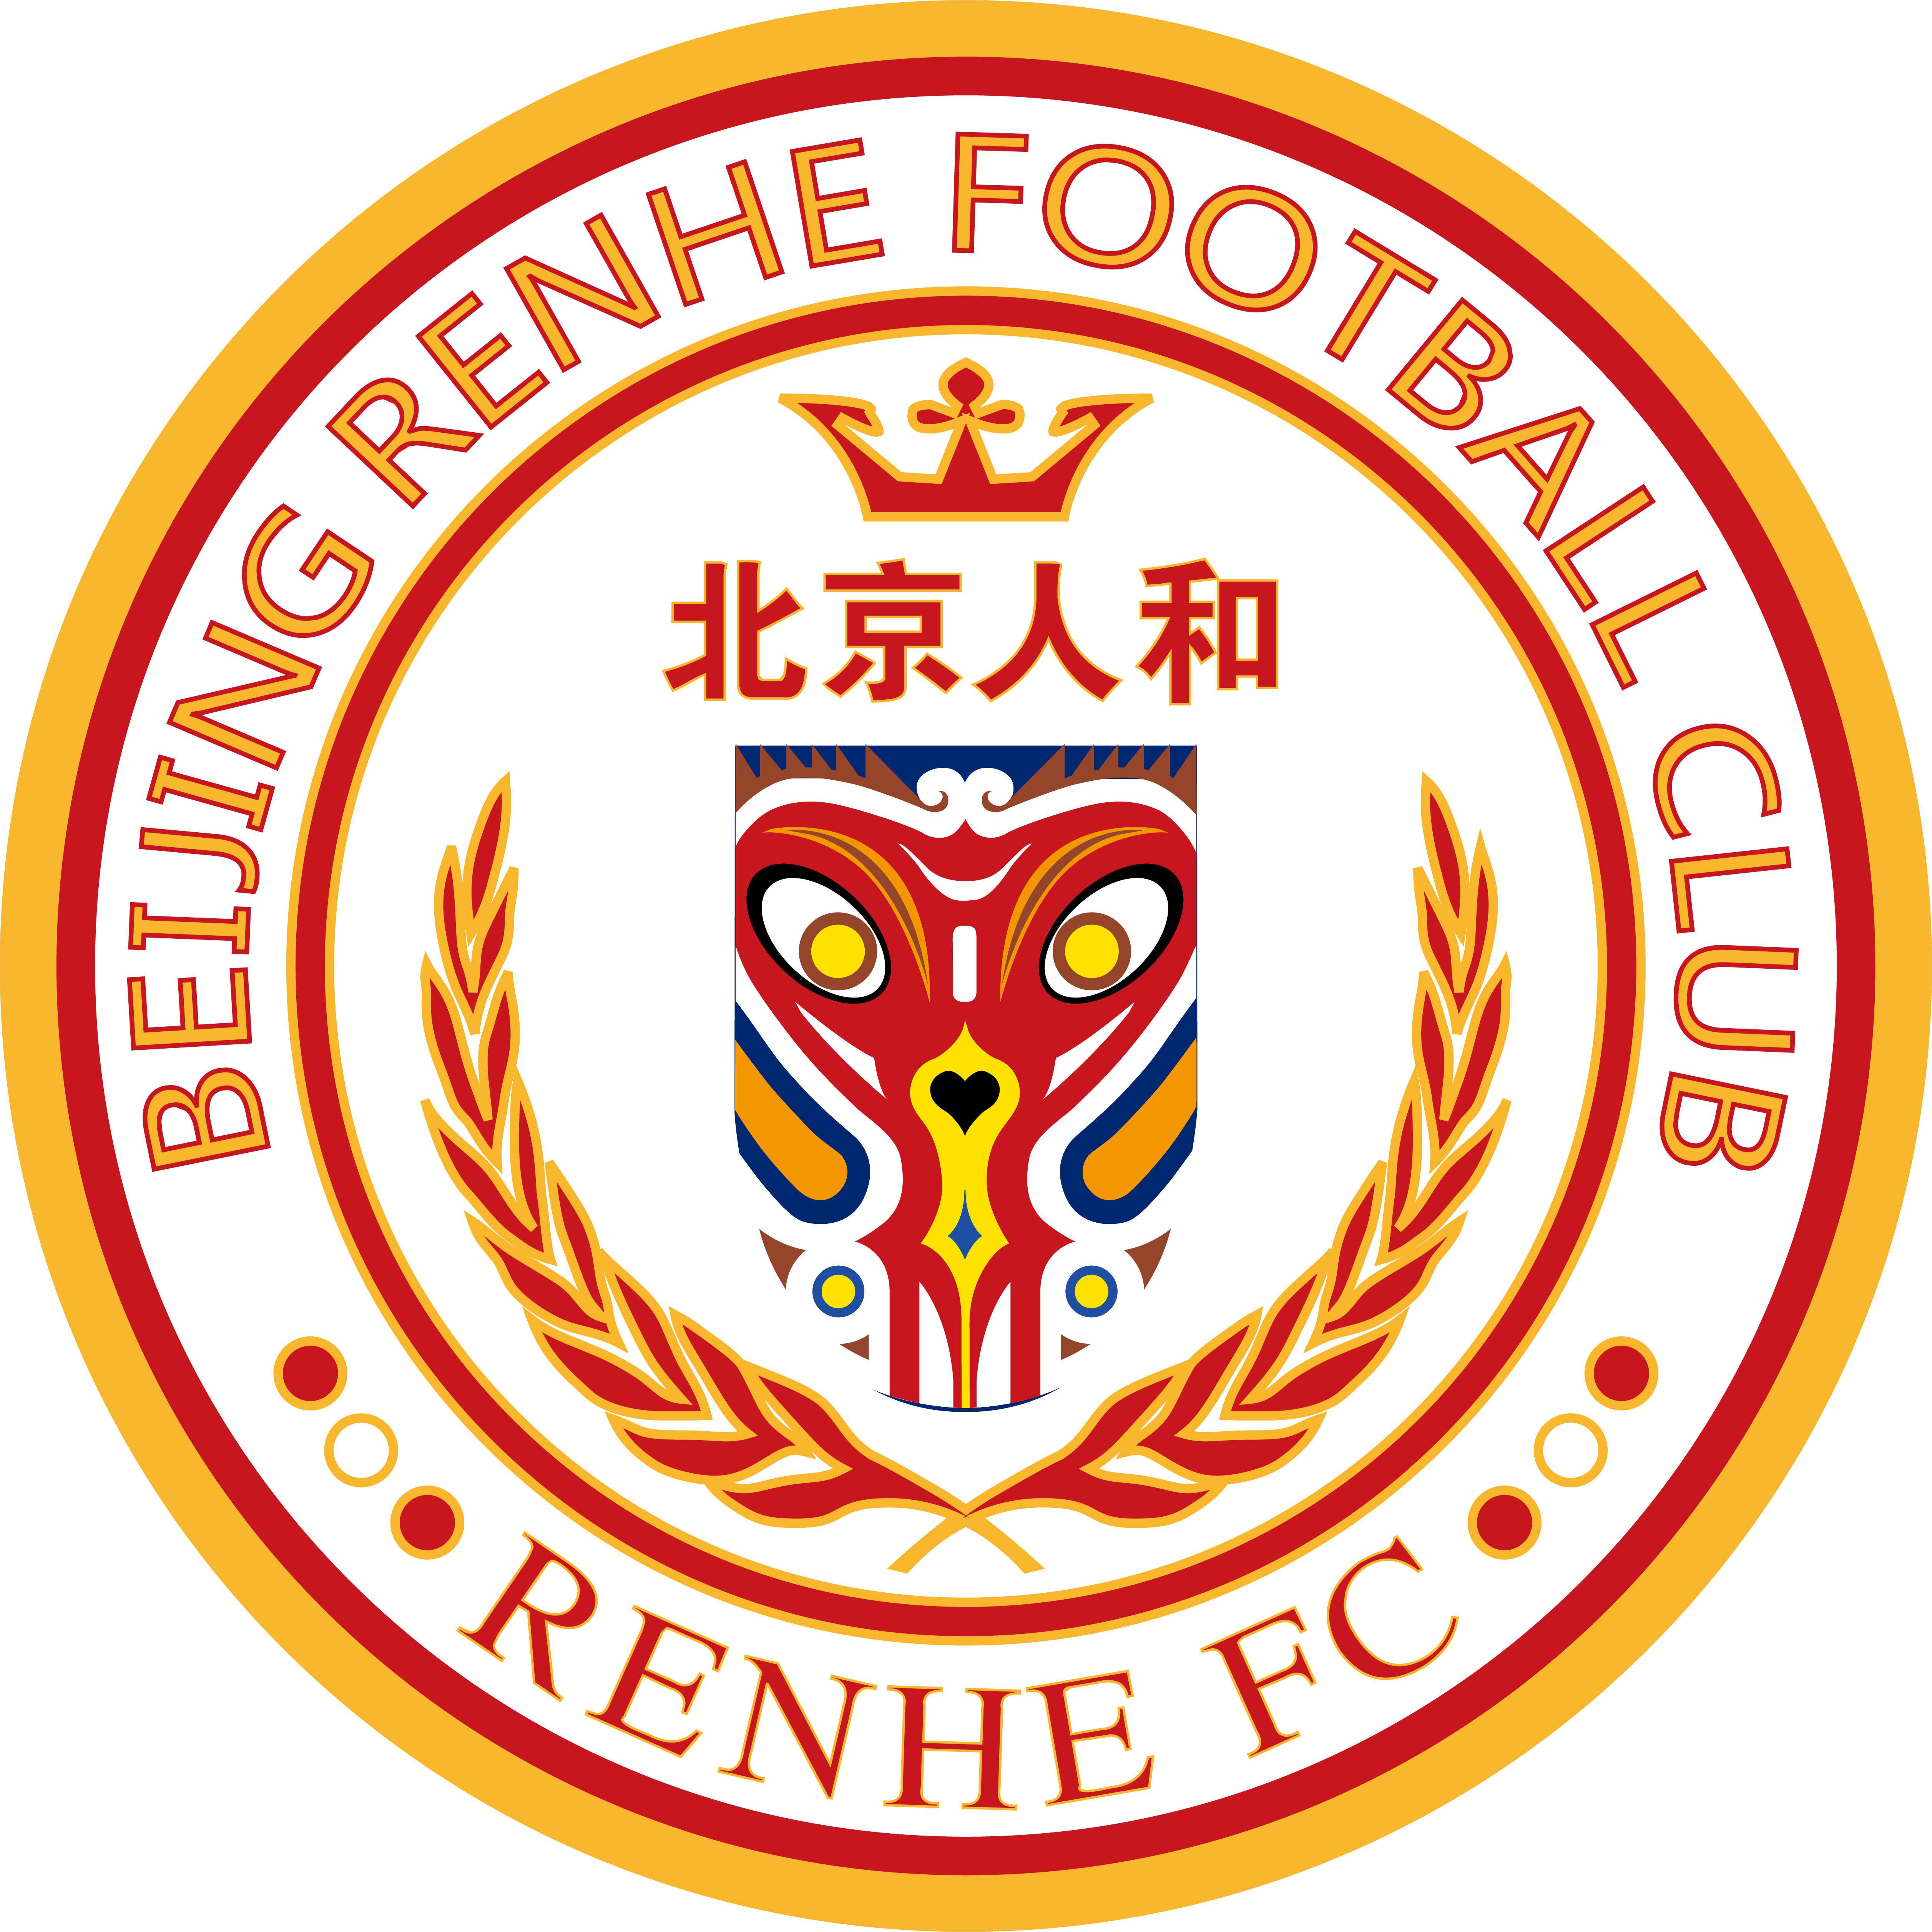 2020賽季中國足球協會甲級聯賽